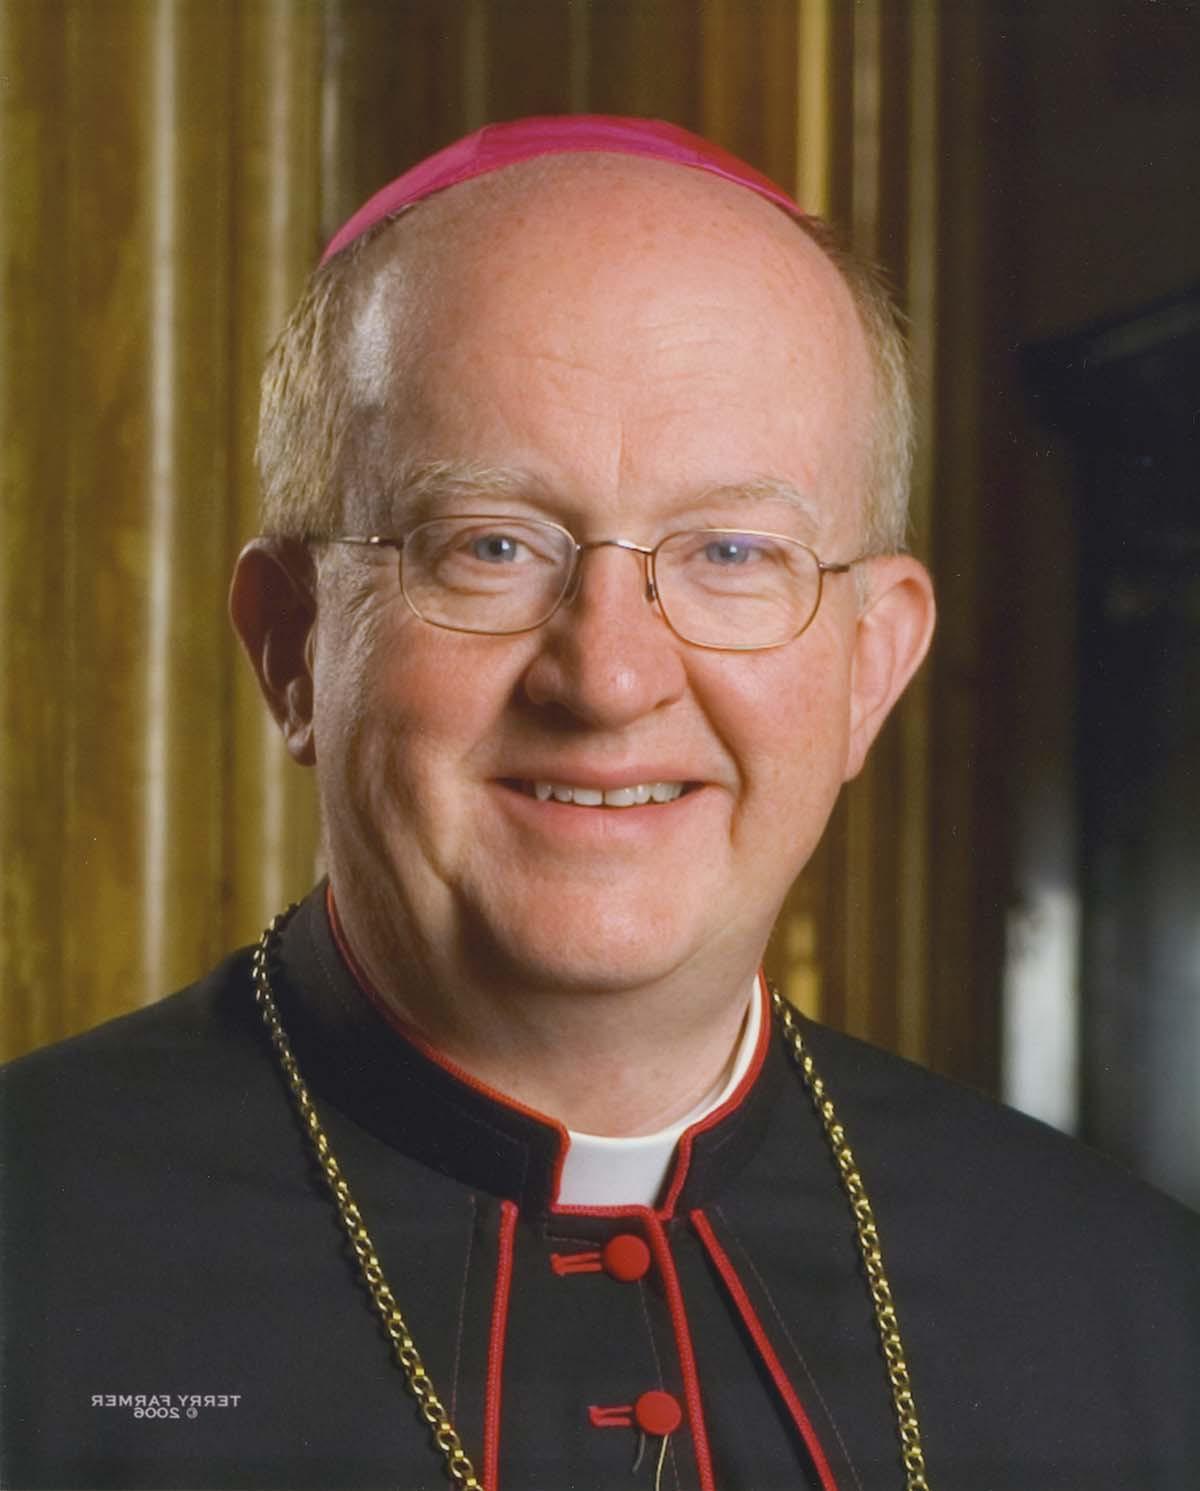 Bishop Kevin Vann